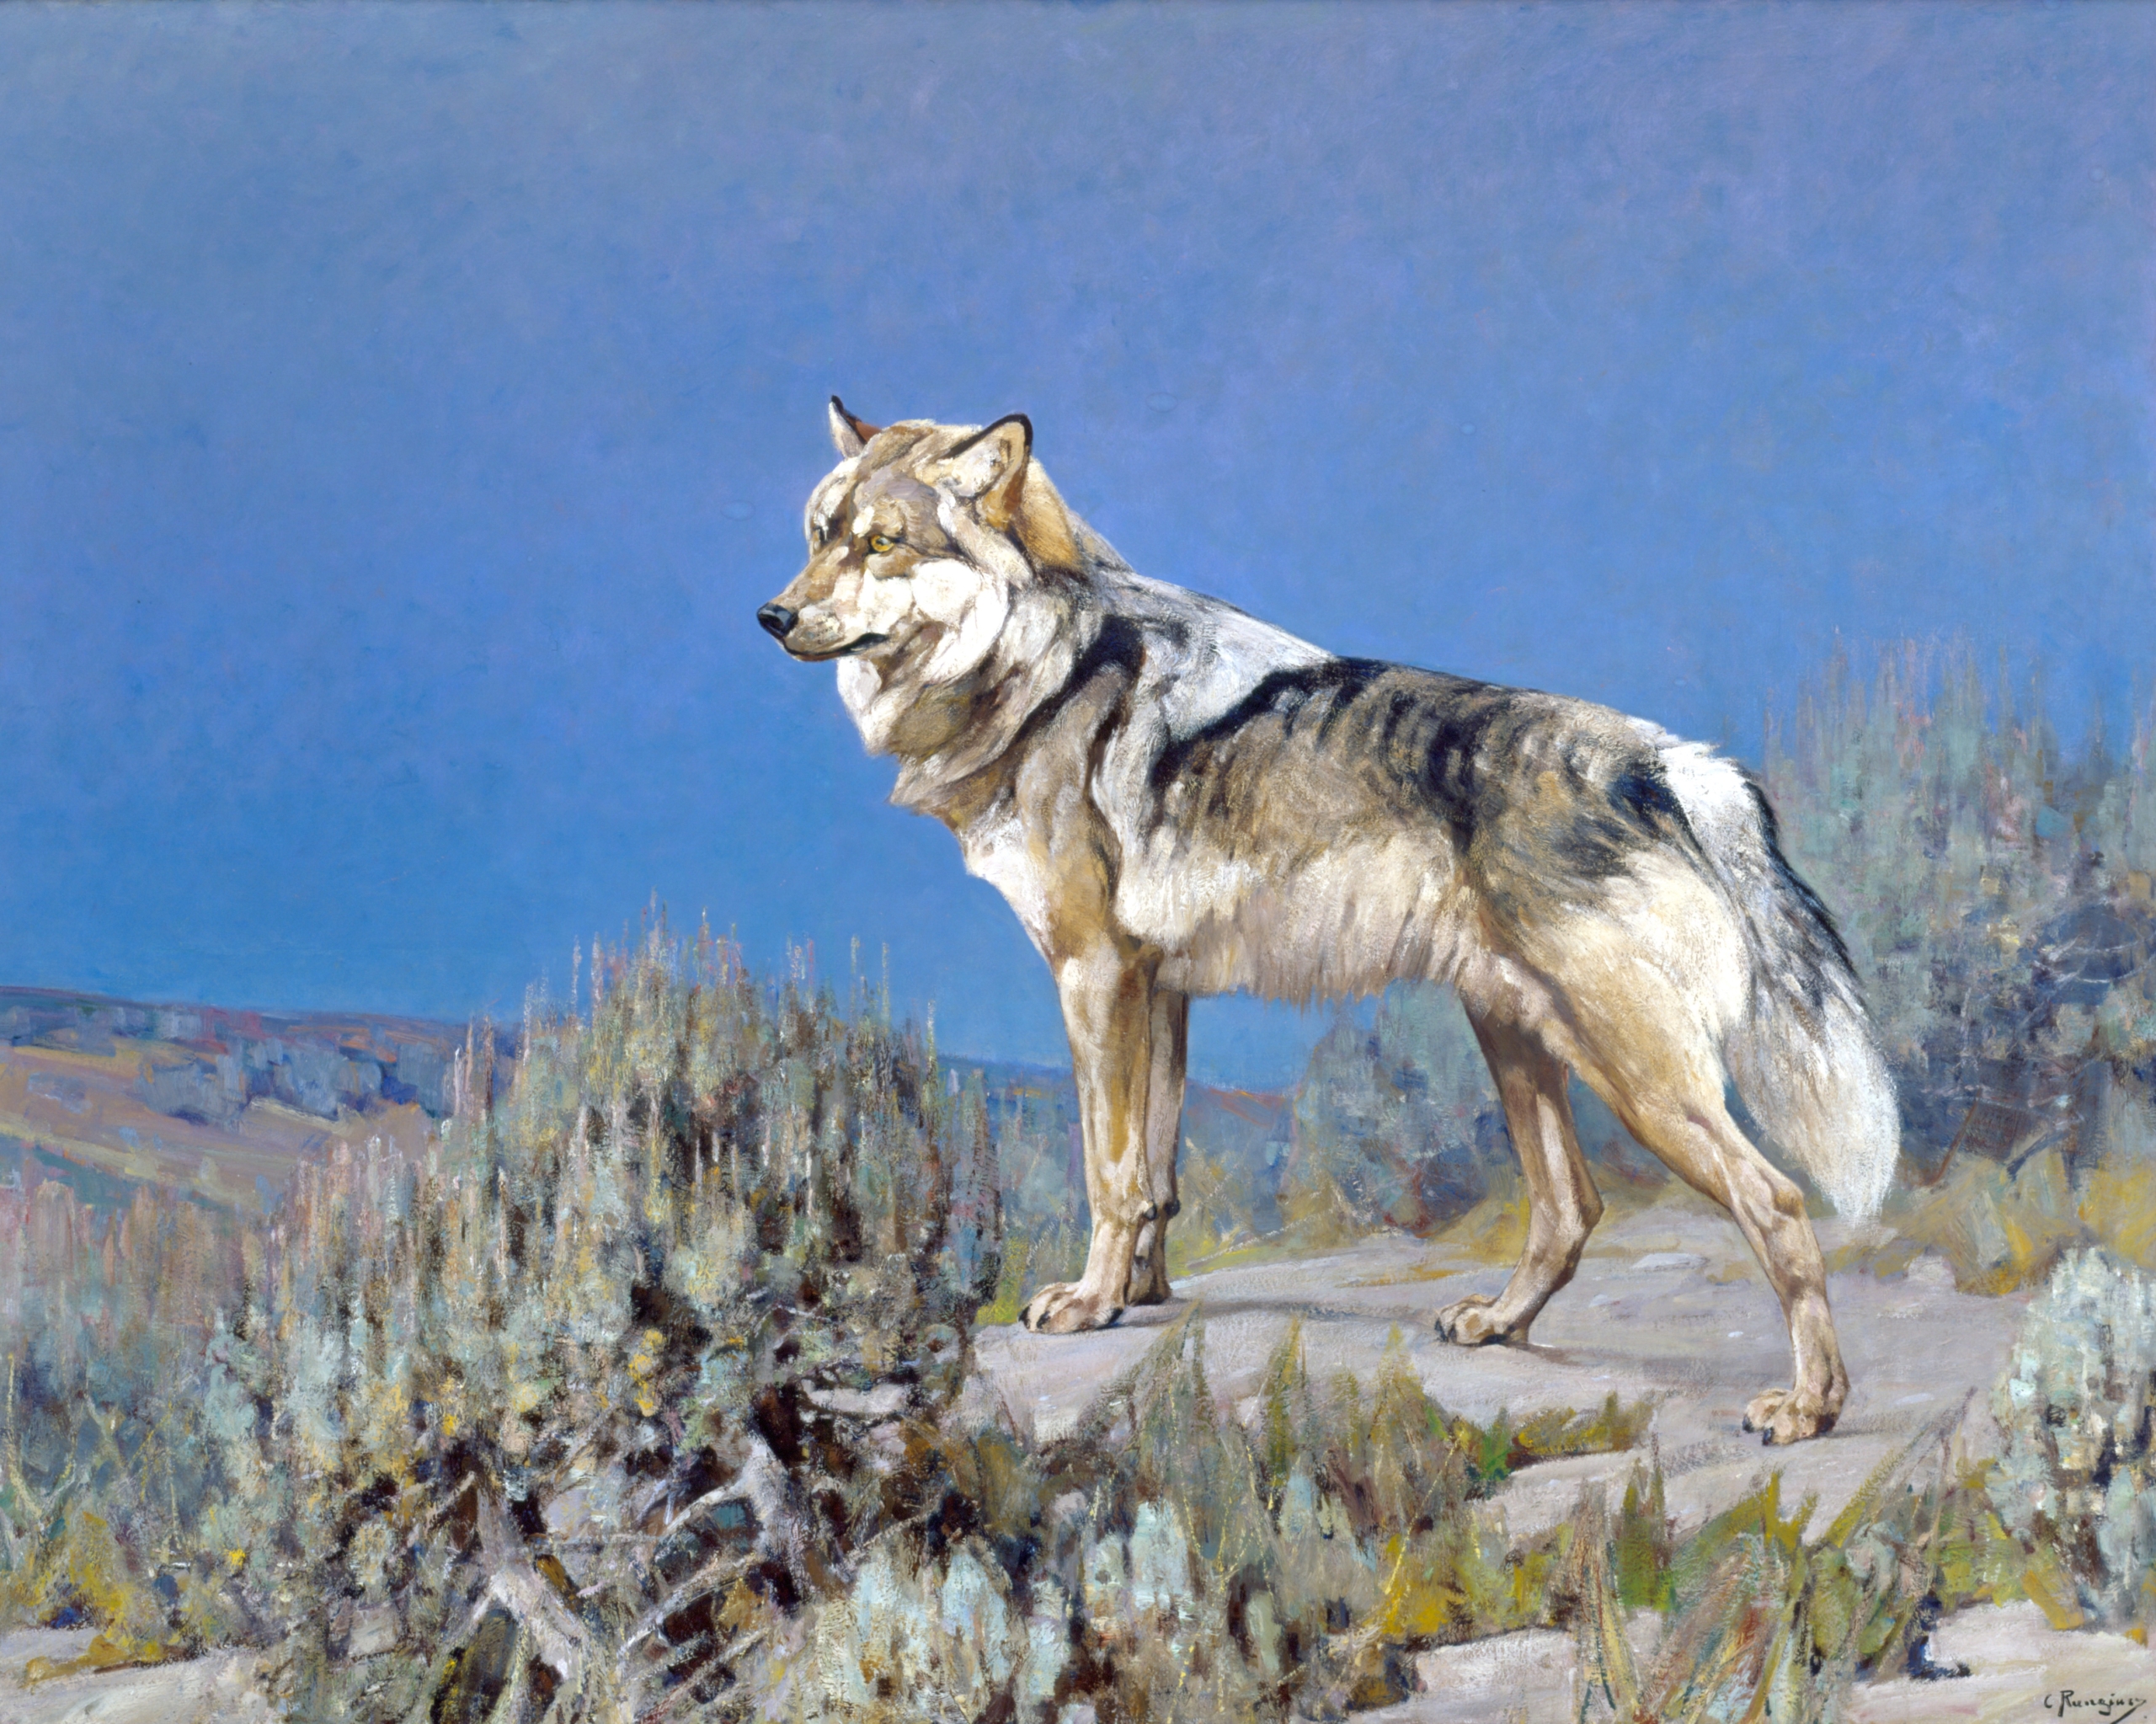 Tác phẩm “Sói Xám,” tiểu bang Wyoming, được vẽ khoảng năm 1927, họa sĩ Carl Rungius (Nước Đức, 1869 – 1959). Tranh sơn dầu trên vải canvas. Kích thước: 60 inch x 75 inch (khoảng 1500 mm x 1875 mm). Quà tặng cho tổ chức bảo tồn bất vụ lợi Jackson Hole Preserve, Viện Bảo Tàng Thiên Nhiên Hoang Dã Quốc Gia. (Ảnh: Bản quyền của họa sĩ Carl Rungius)